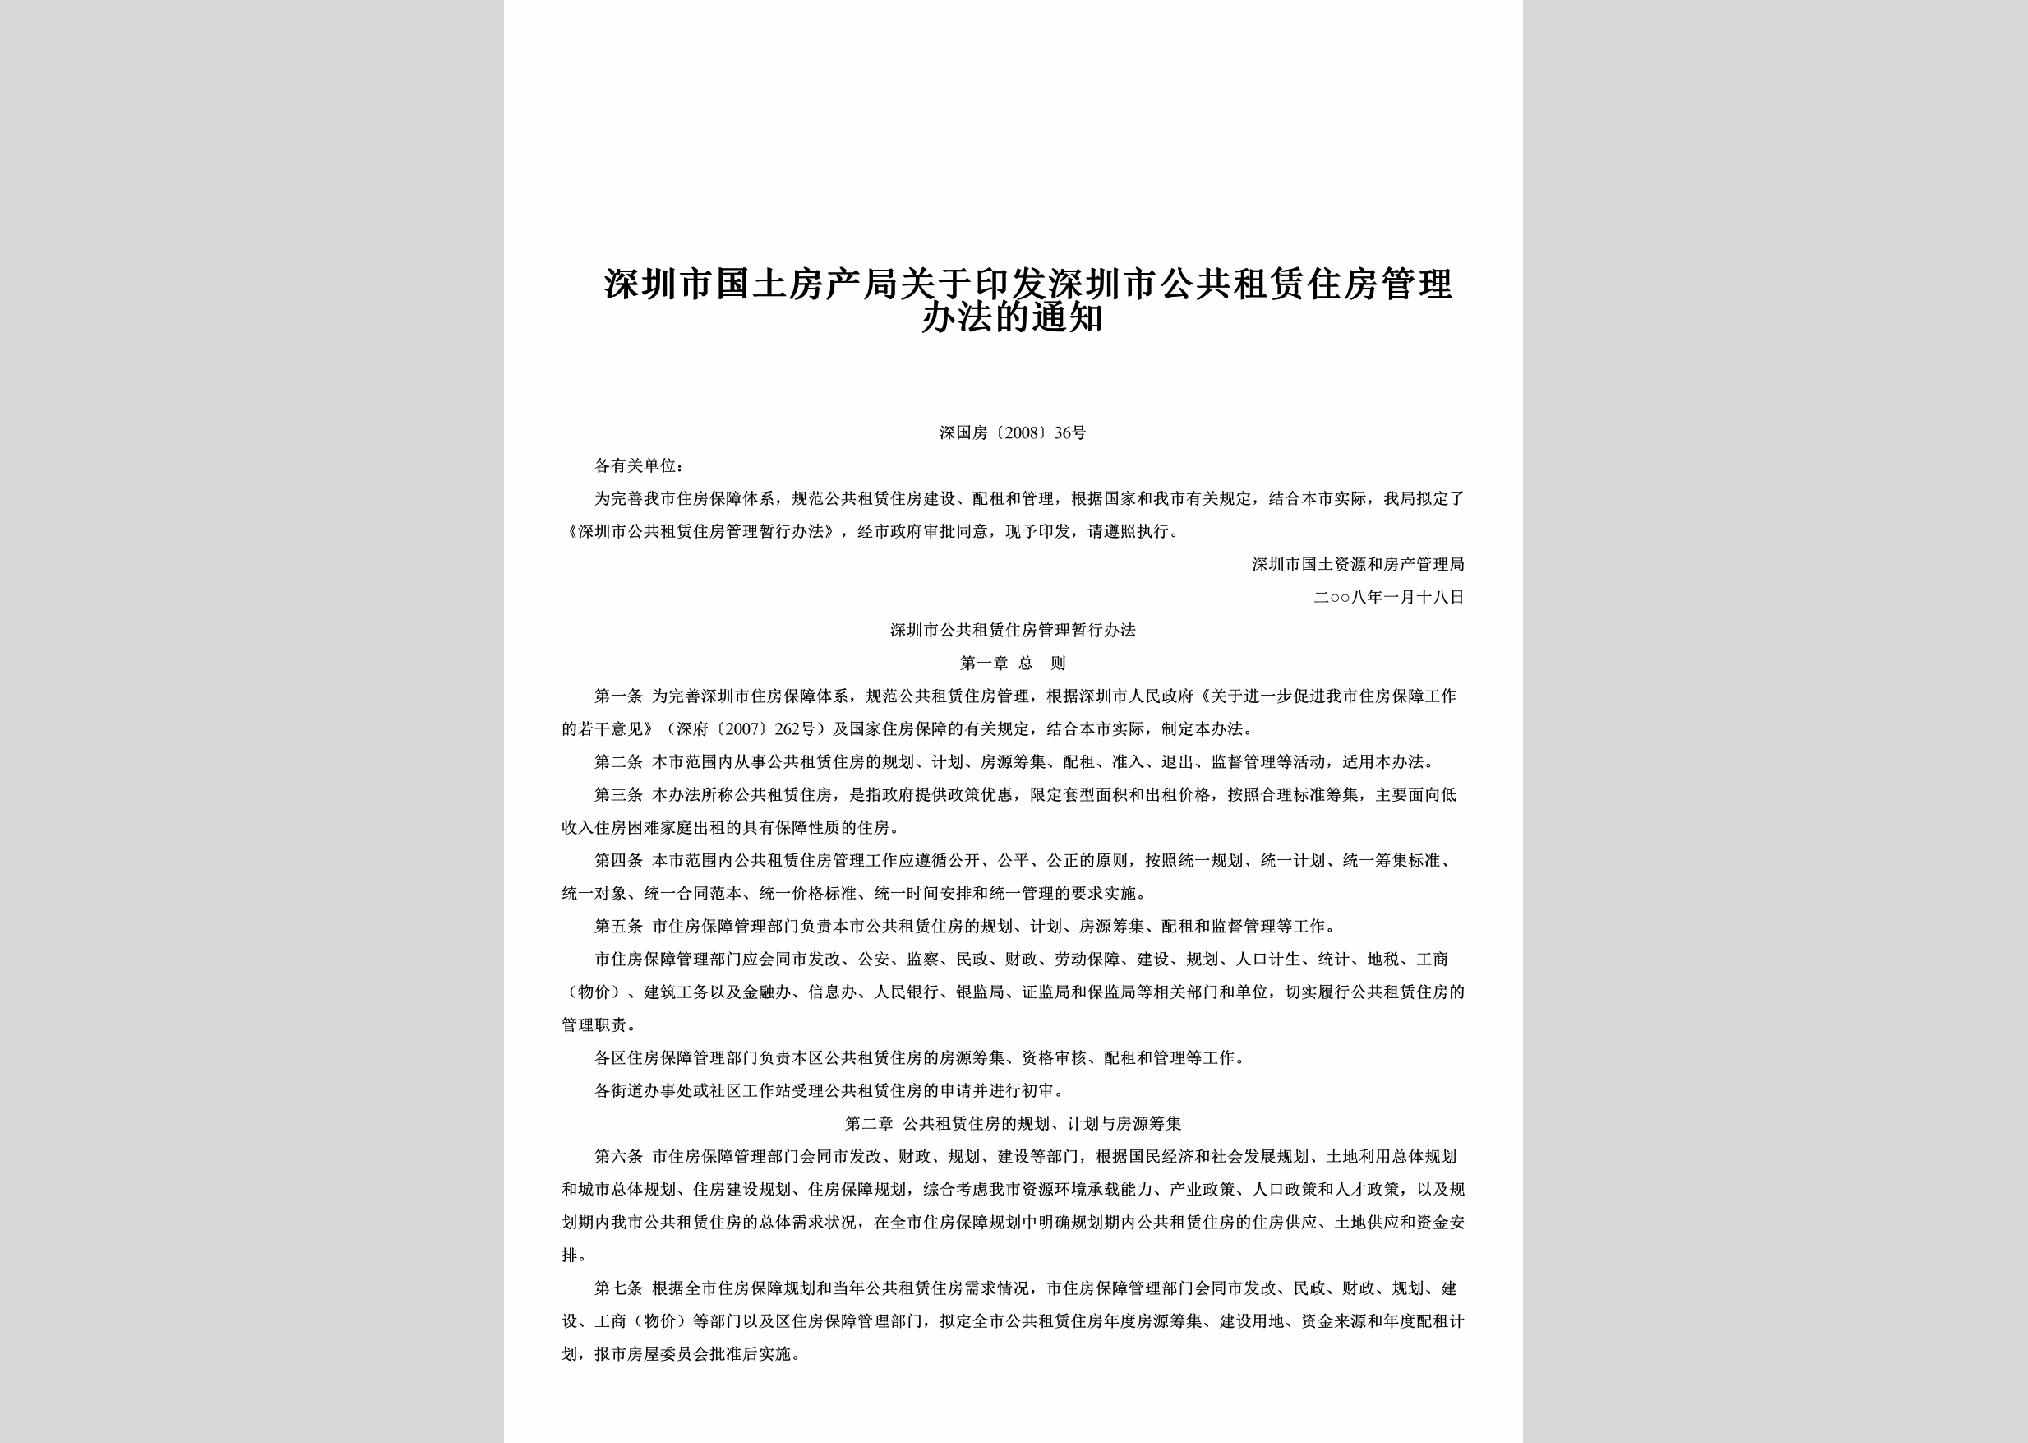 深国房[2008]36号：关于印发深圳市公共租赁住房管理办法的通知